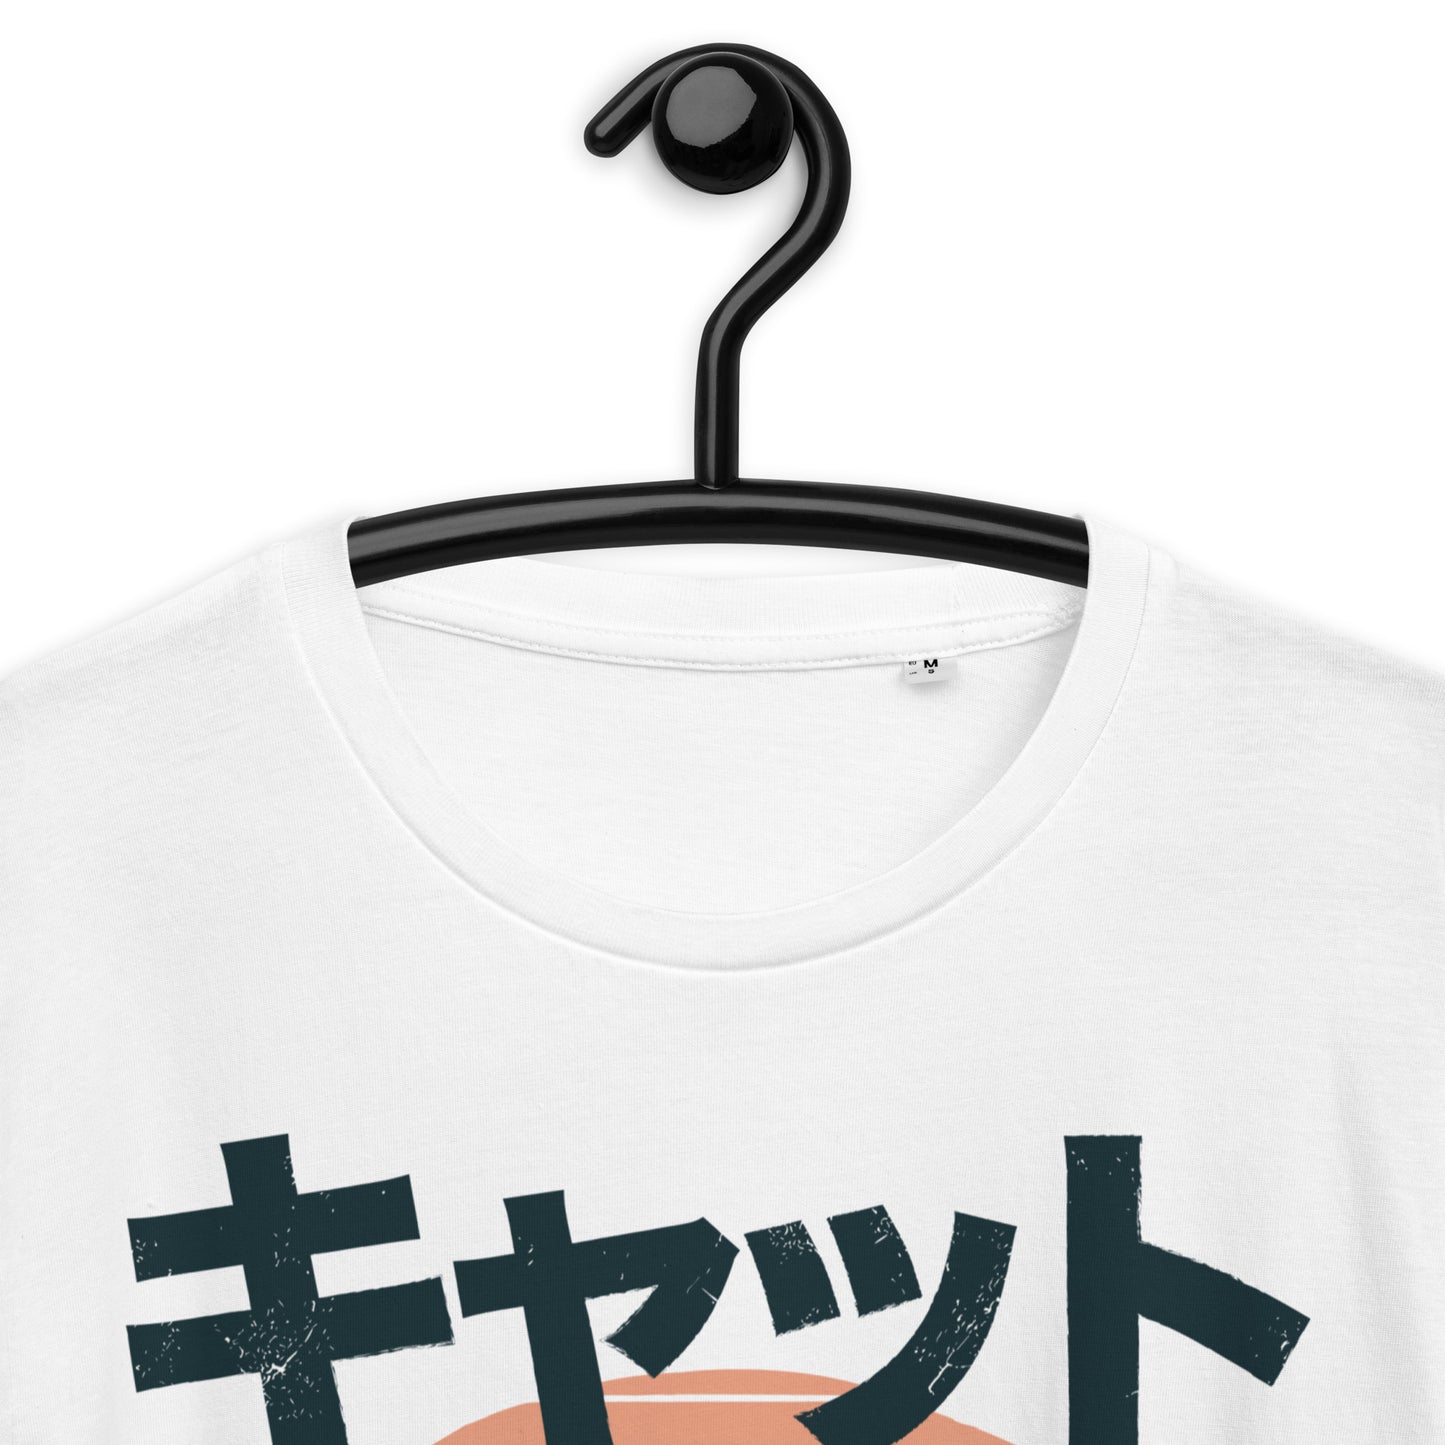 Ramen Kitty - Premium T-Shirt